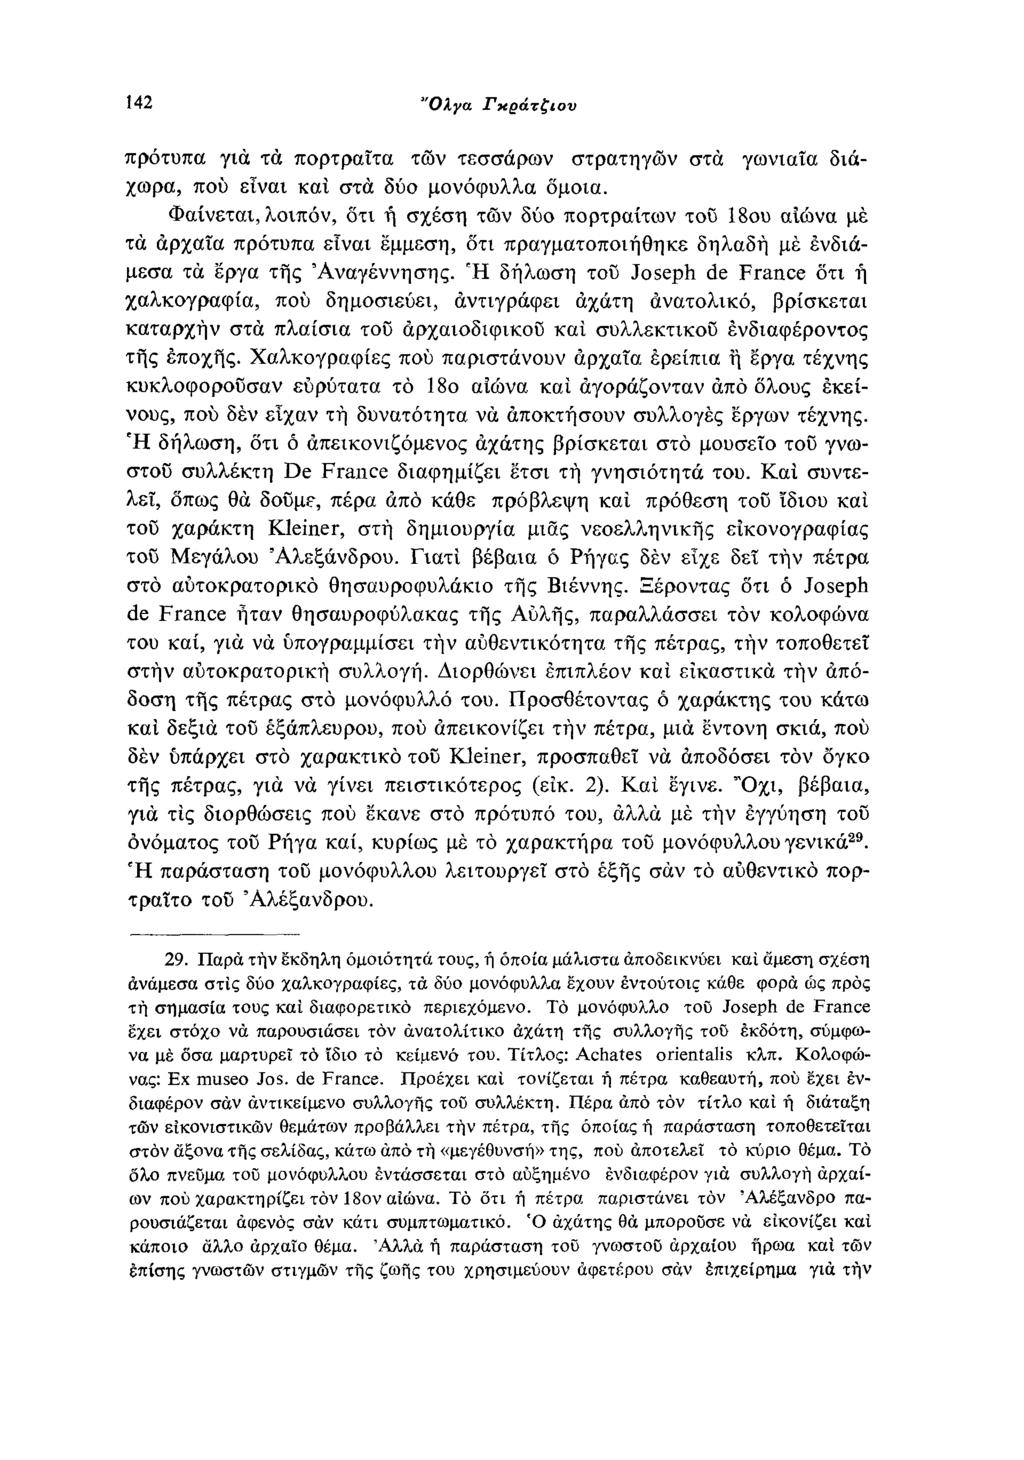 142 Όλγα Γκράτζιου πρότυπα για τά πορτραίτα των τεσσάρων στρατηγών στα γωνιαία διά χωρα, που είναι και στα δύο μονόφυλλα όμοια.